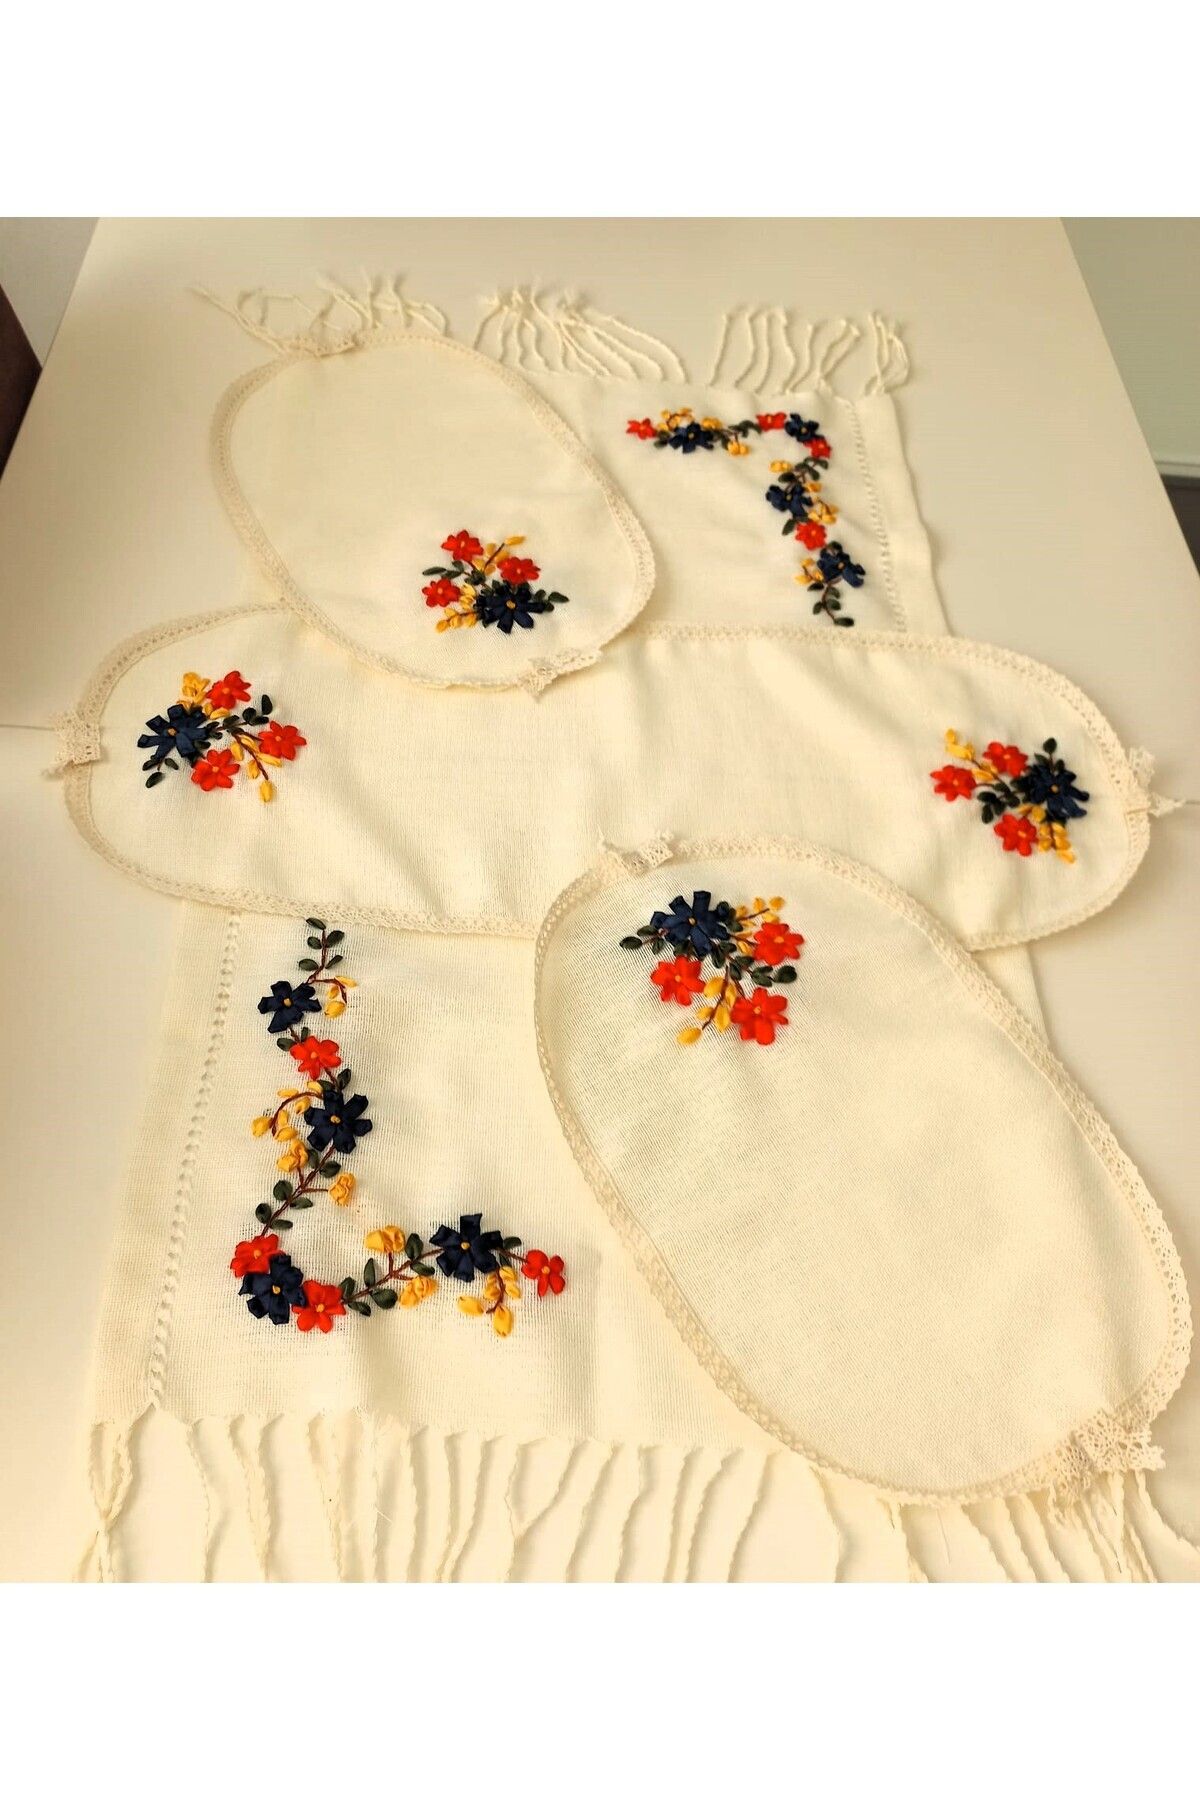 berenly Elde İşlenmiş Etamin Linen Kumaş Üzeri Çiçek Motifli 4'lü Salon Takımı Seti